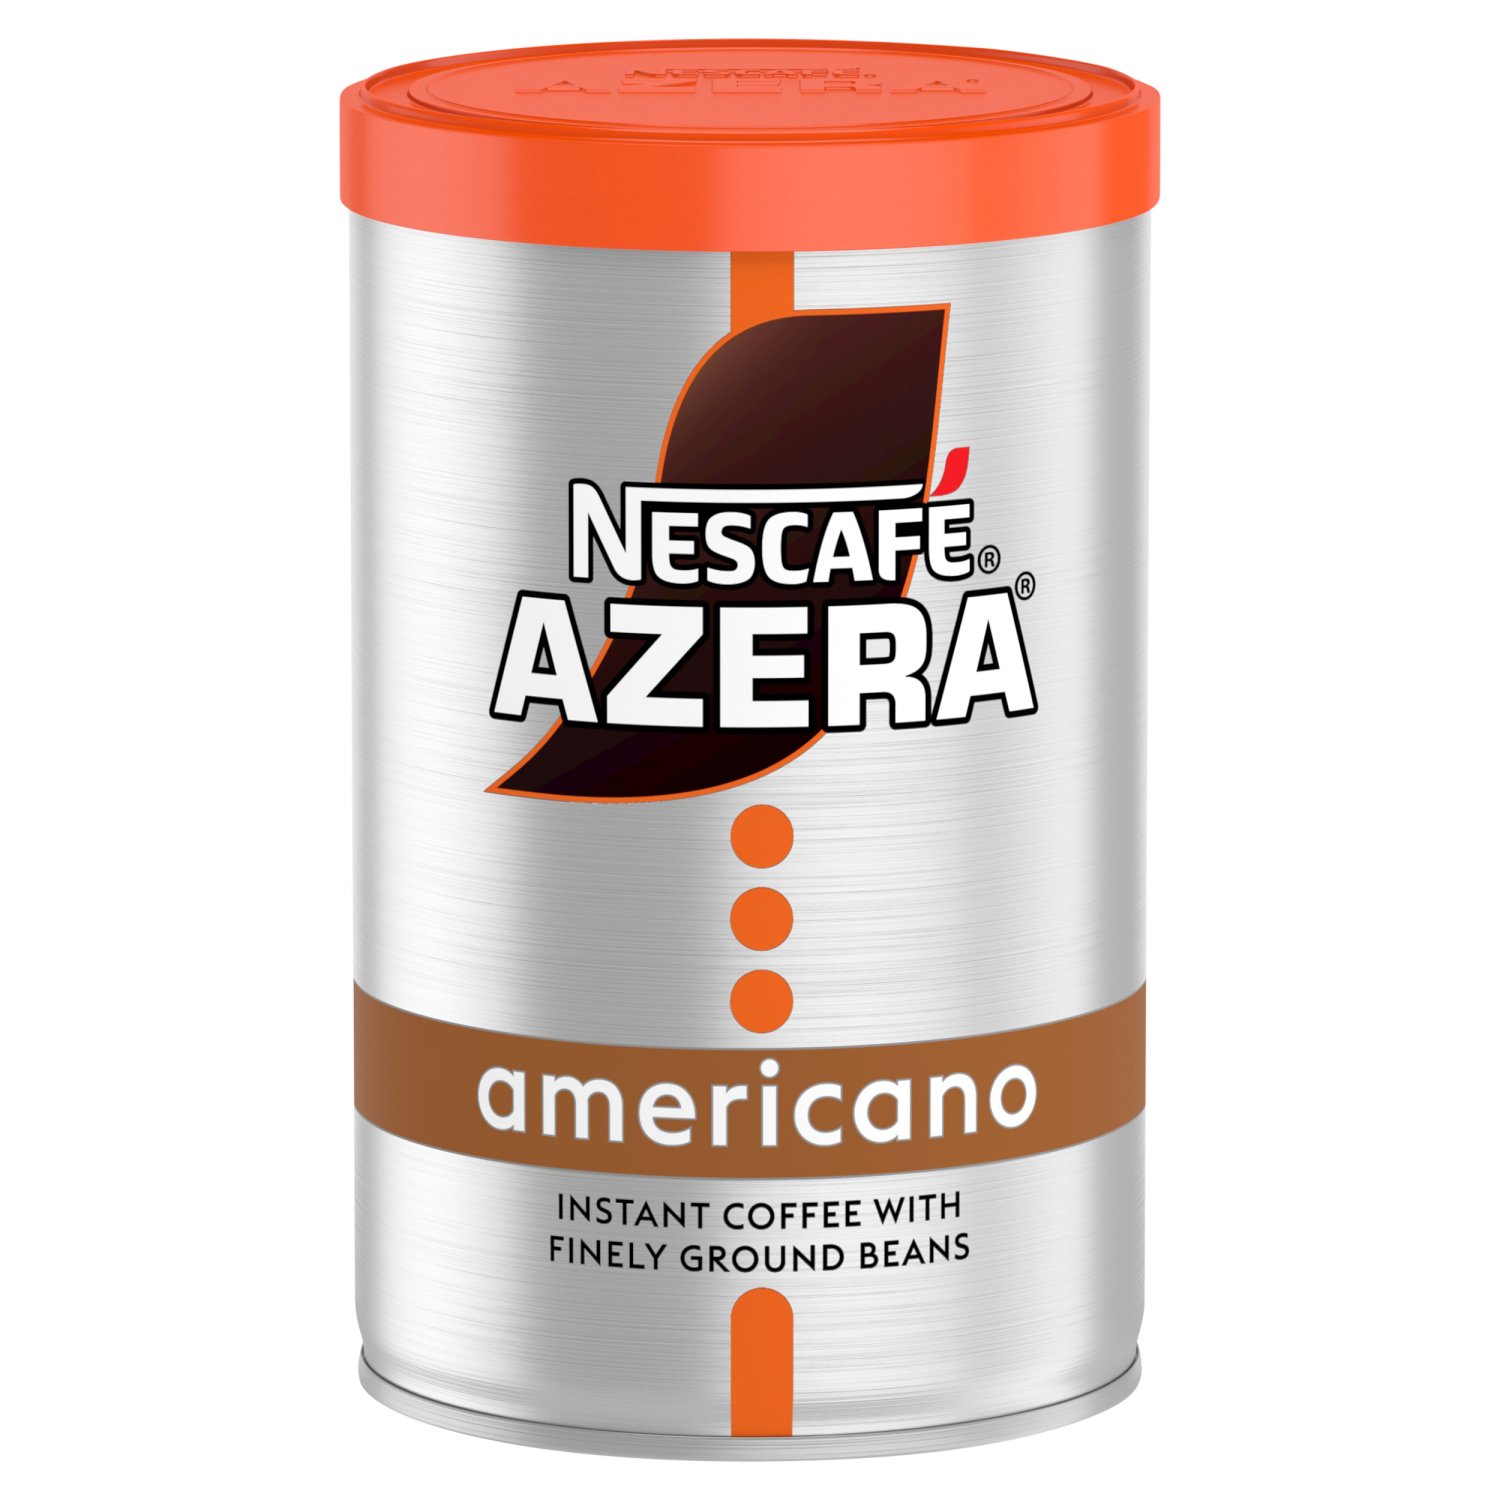 Nescafe Azera Americano (90 g)